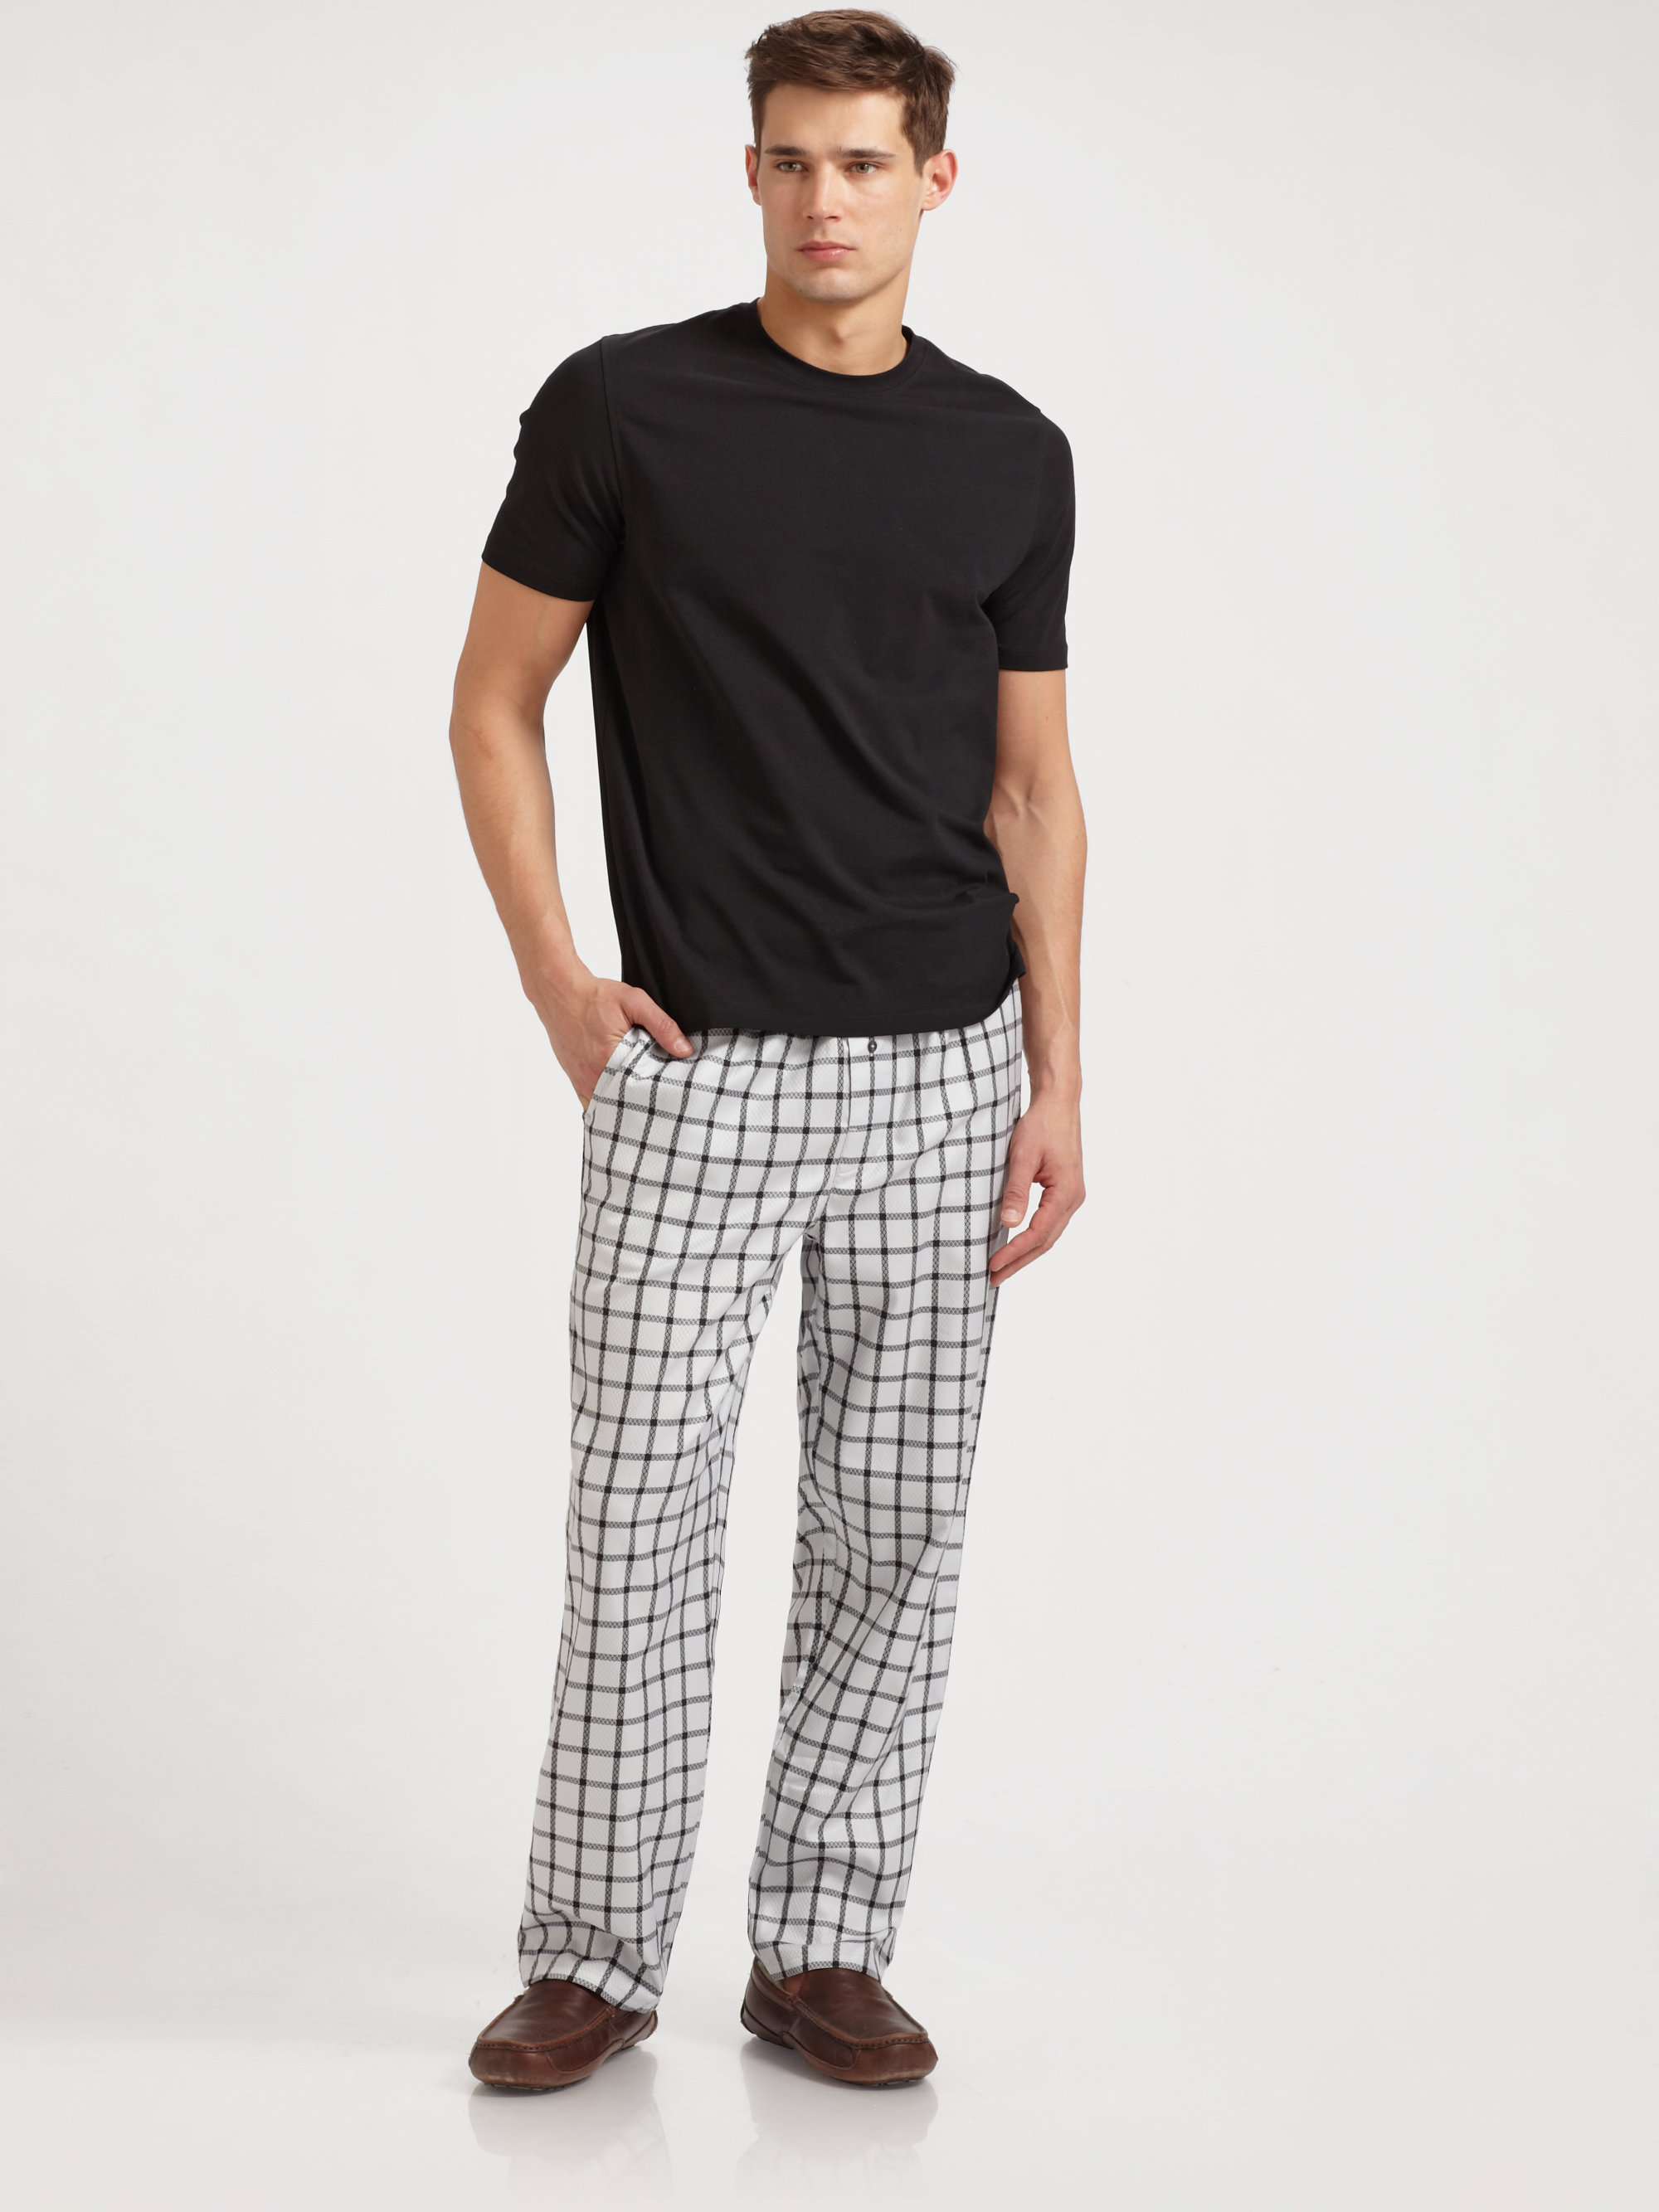 Lyst - Robert graham Jacquard Pajama Pants in Black for Men